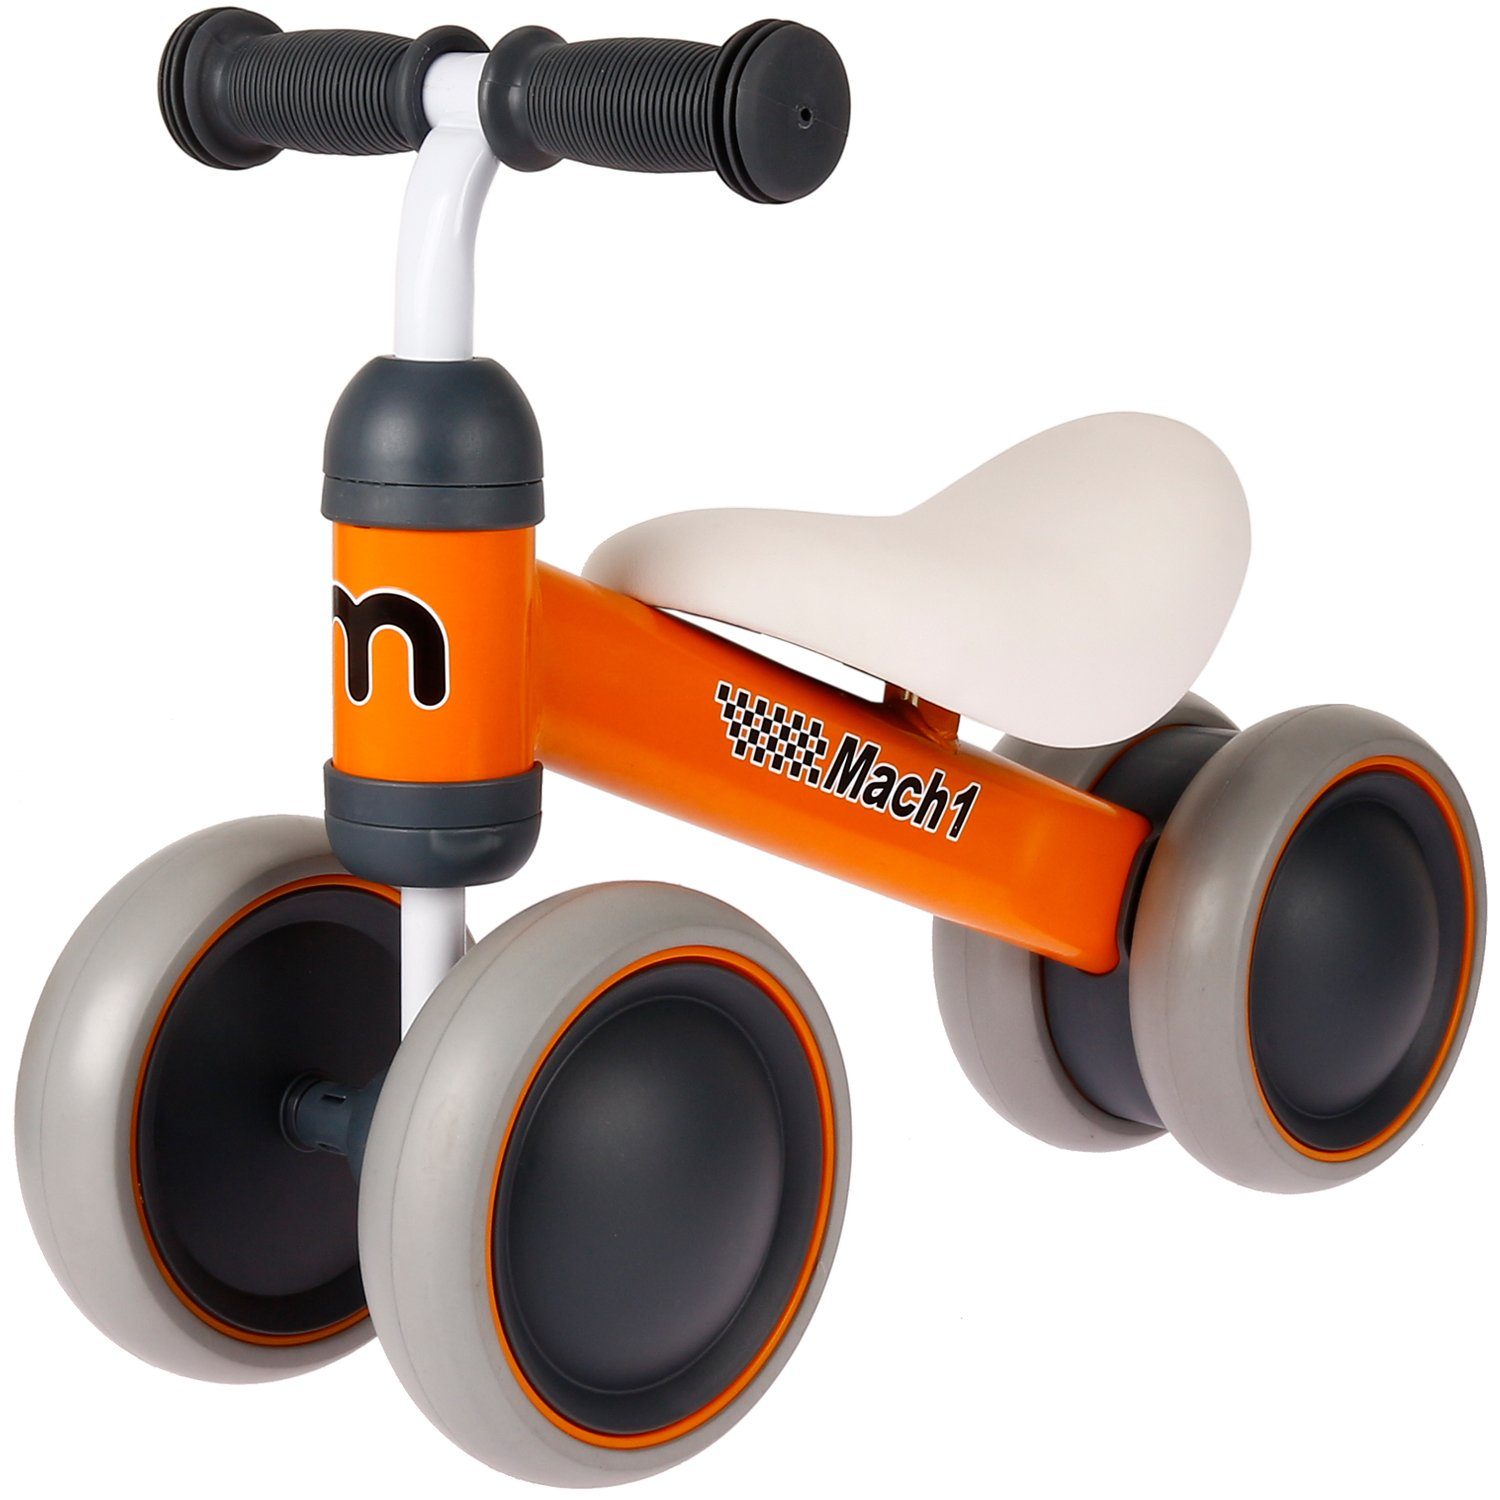 Mach1 Laufrad »Mini Kinder Lauflernrad Kinderlaufrad Rutscher Rutscherauto  - 4 Räder« 150x40mm Zoll online kaufen | OTTO